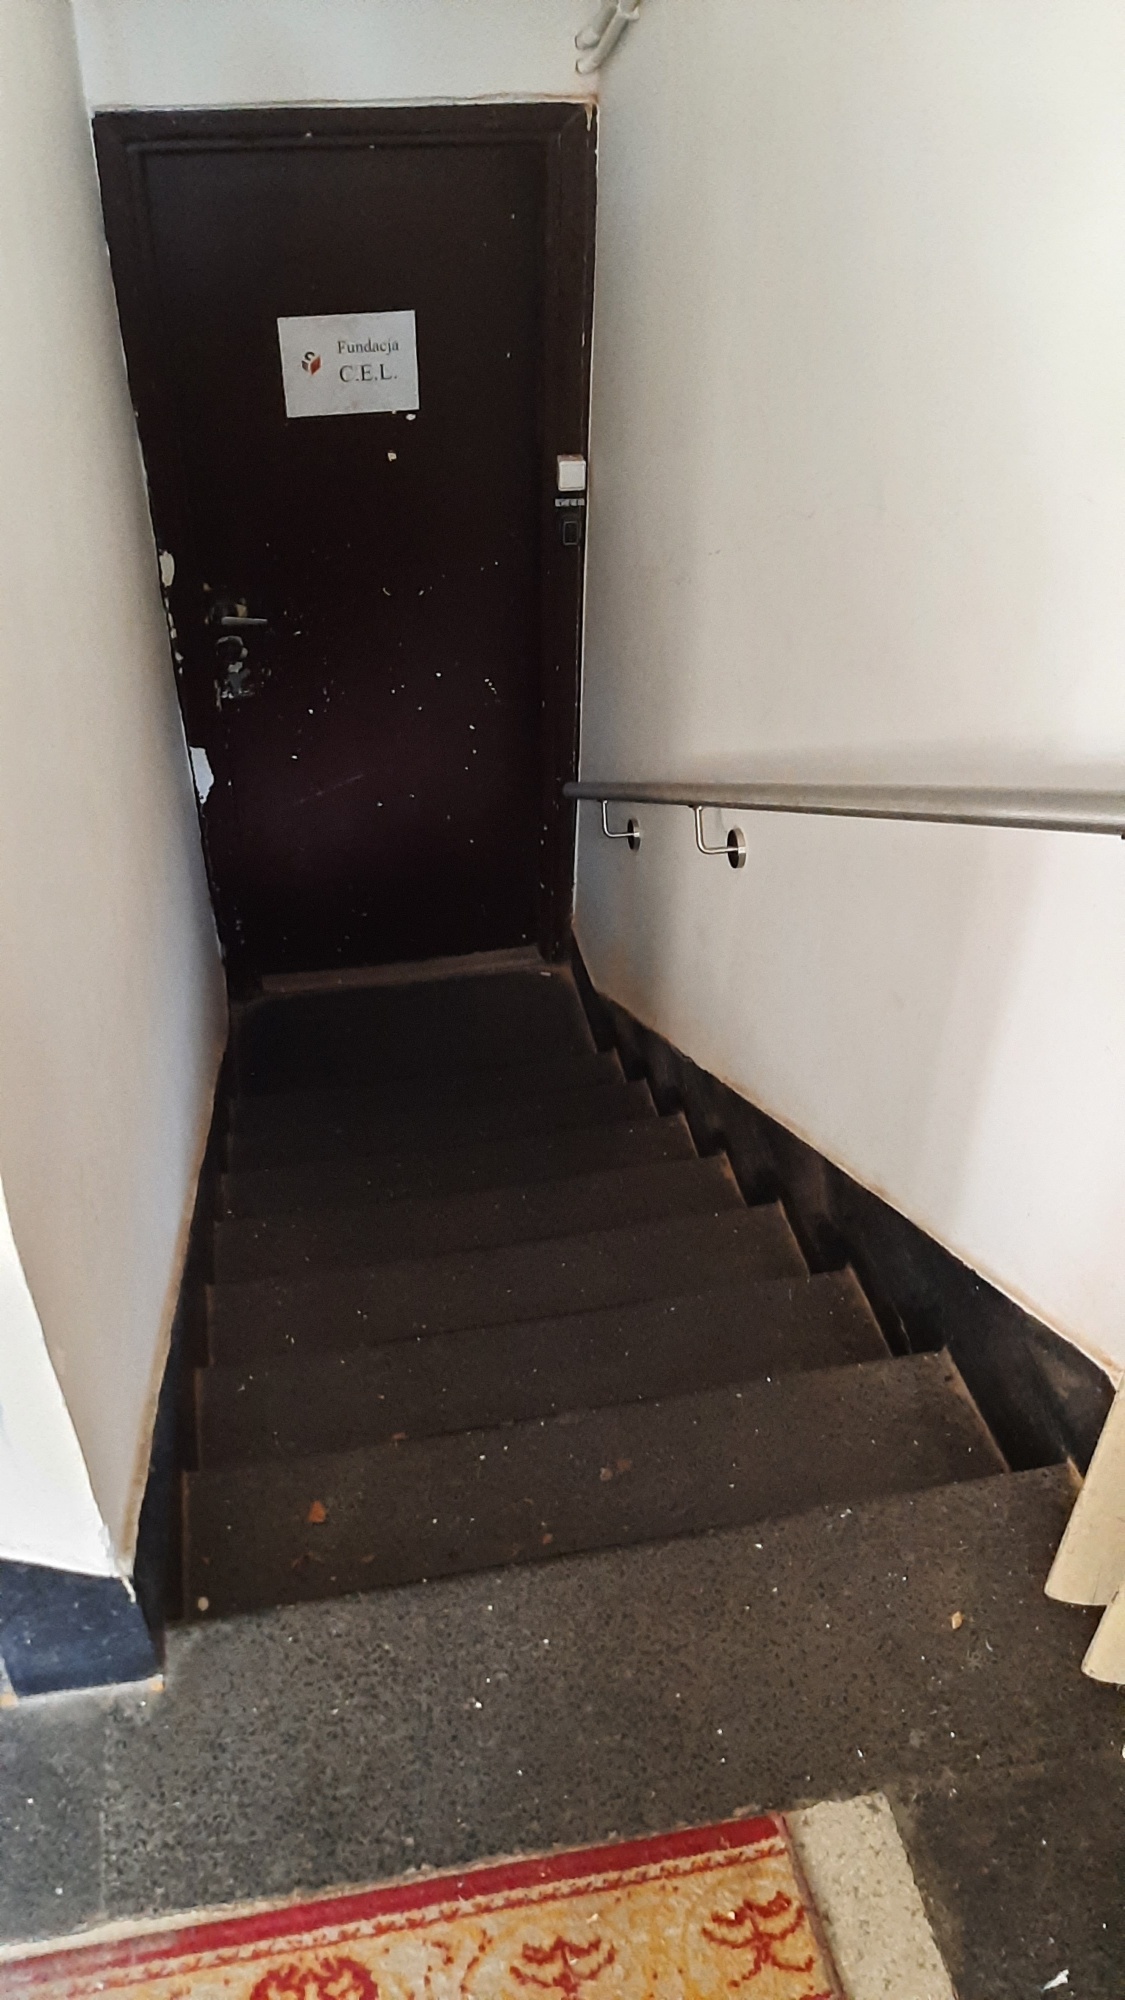 schody z poziomu podwórka do holu na poziomie piwnic i lokalu C.E.L